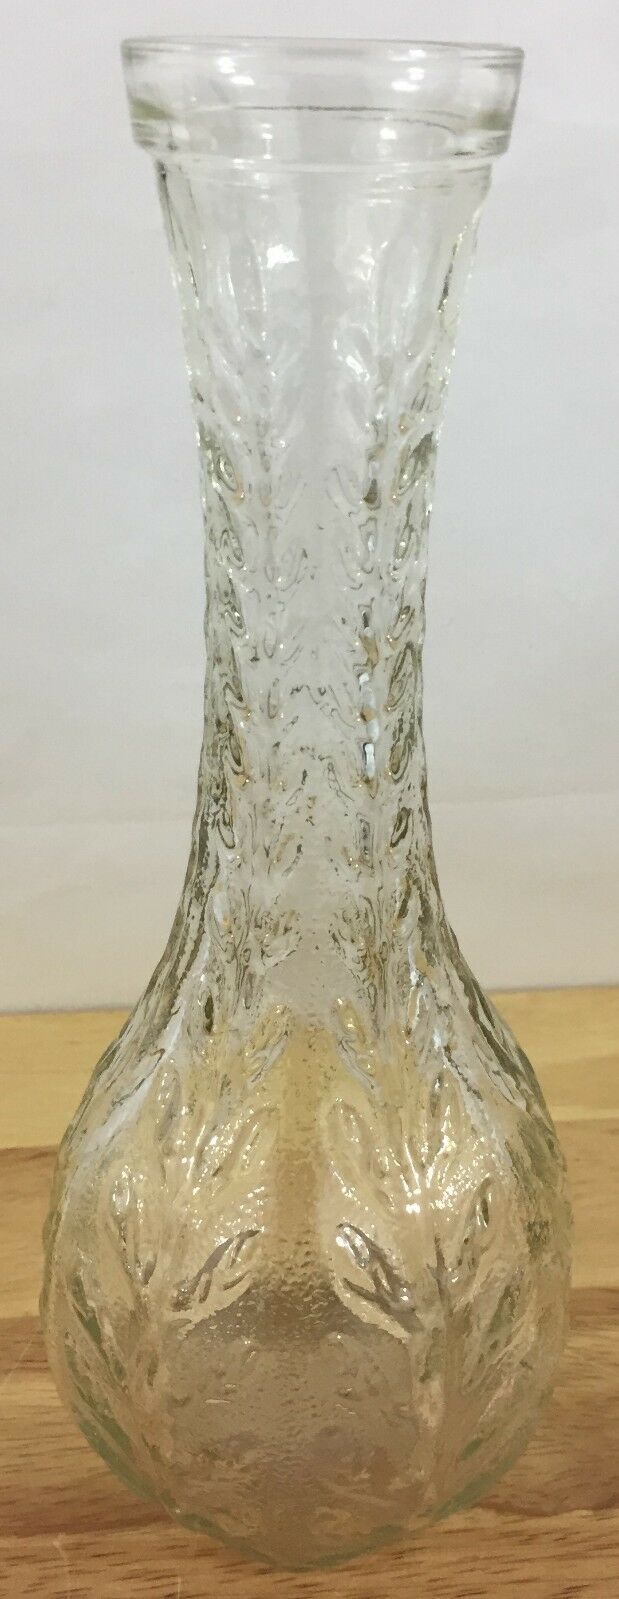 FTD Clear Glass Vase 9" Tall - Vine Design Vase - From 1980 - FTD Vase 1980's - $9.89